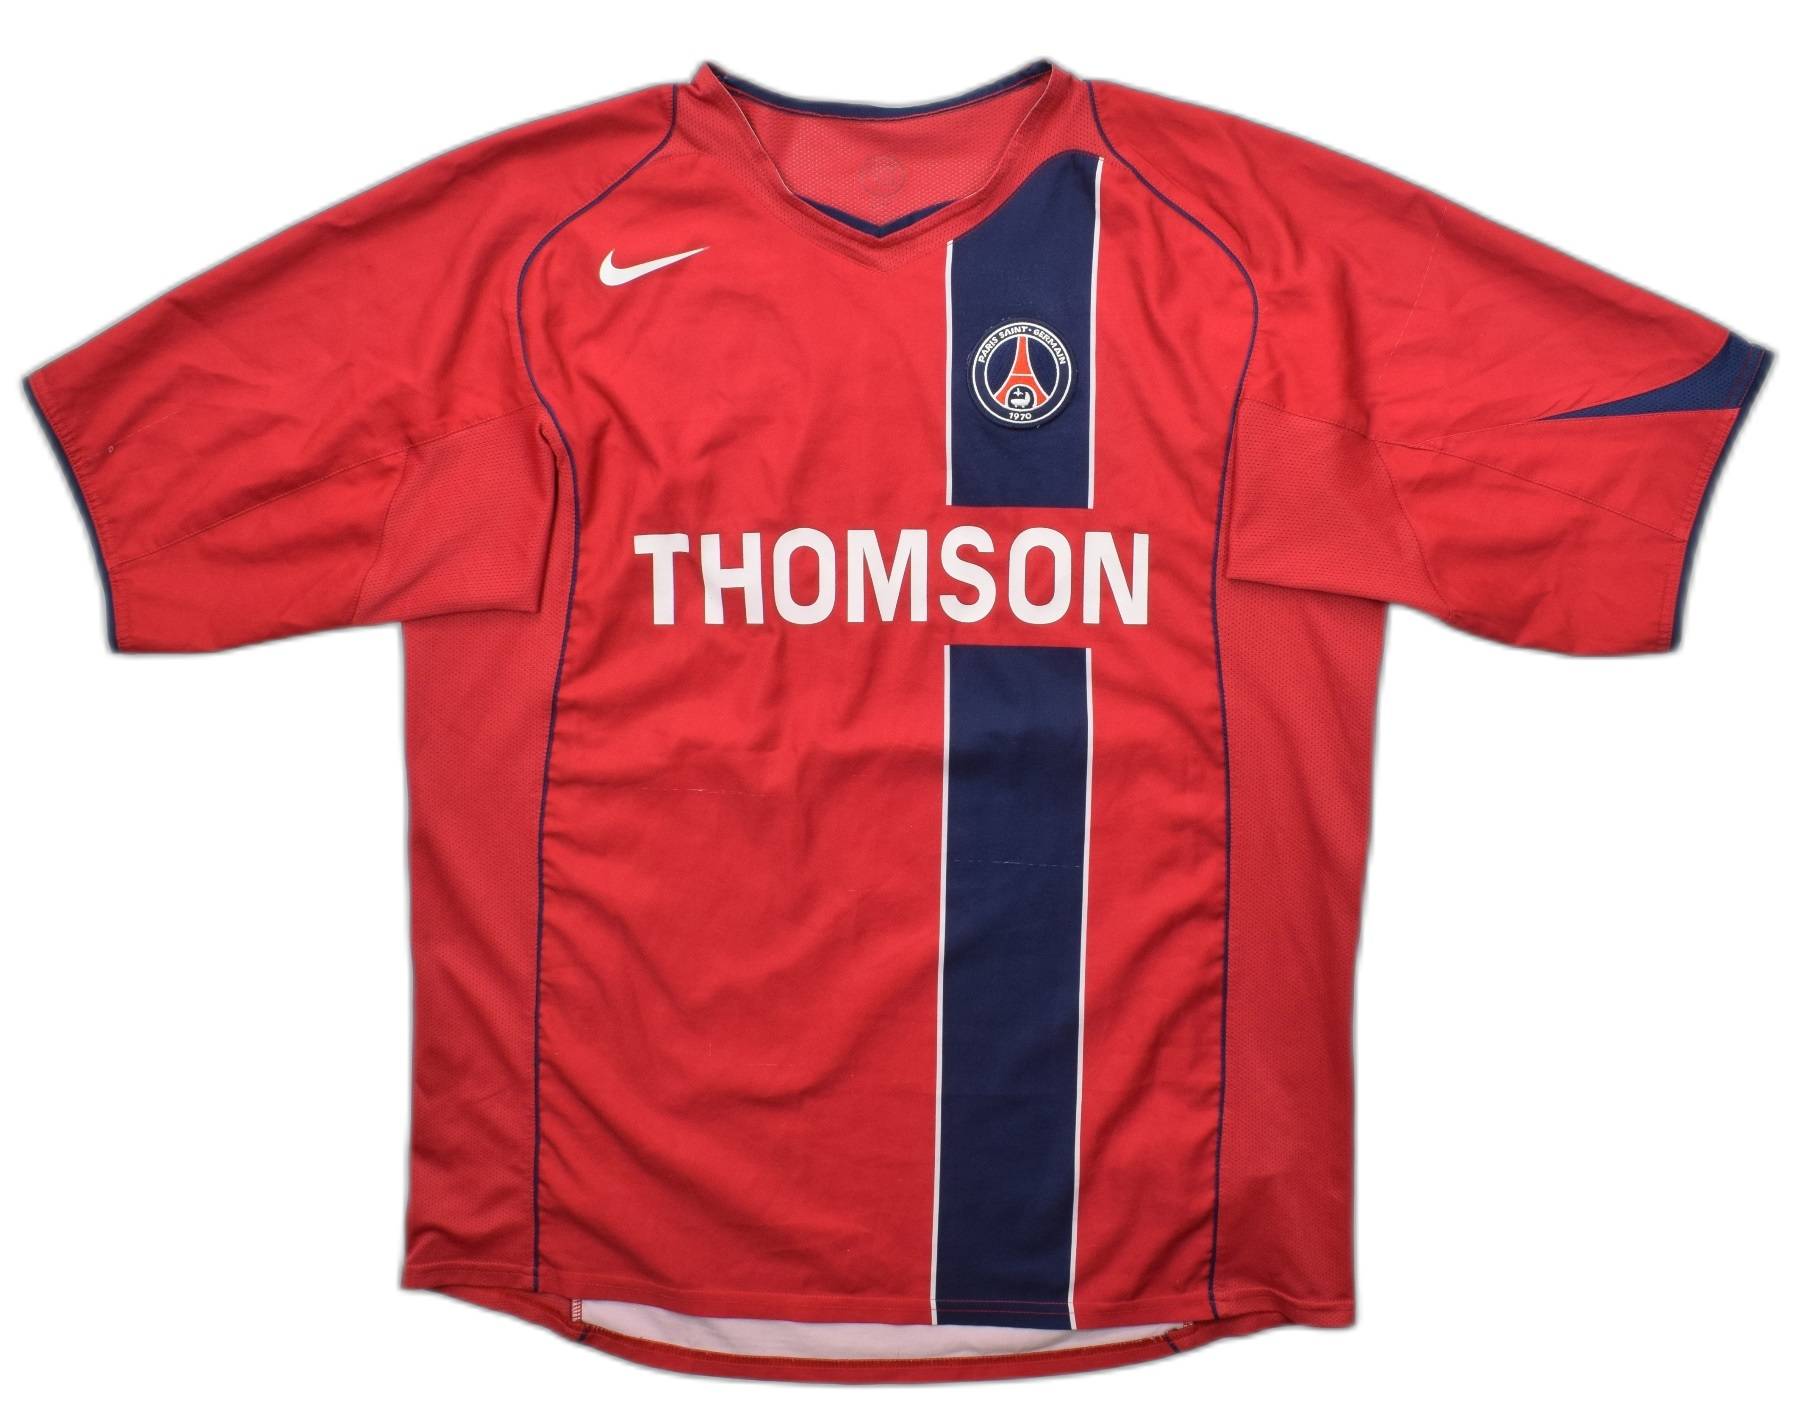 Nike 2004-05 Paris Saint-Germain Shirt